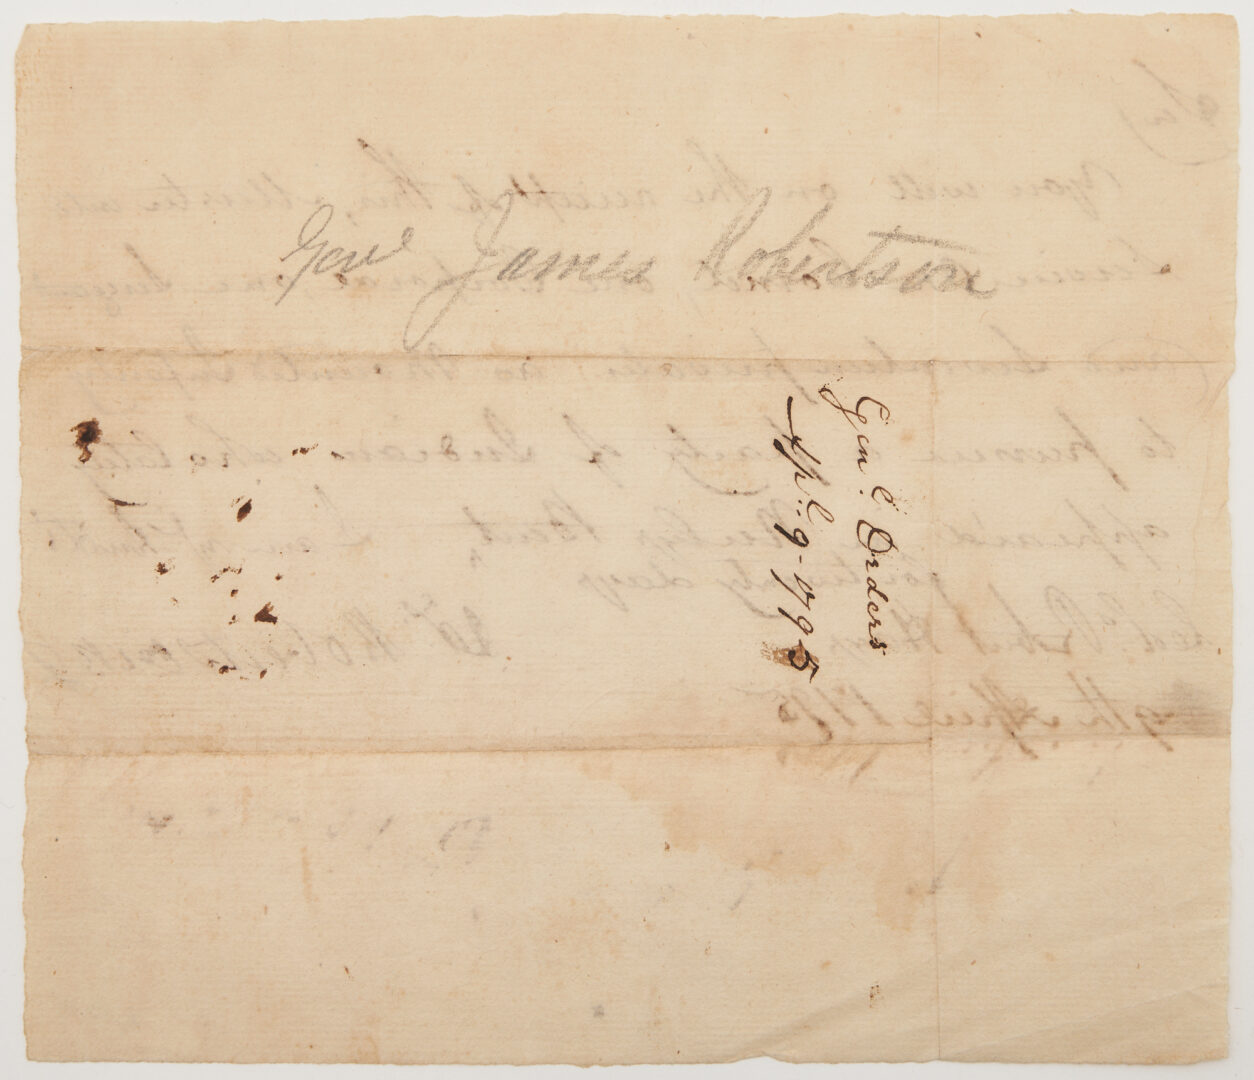 Lot 627: Gen. James Robertson Indian Orders to Col. Robert Hays, 1795